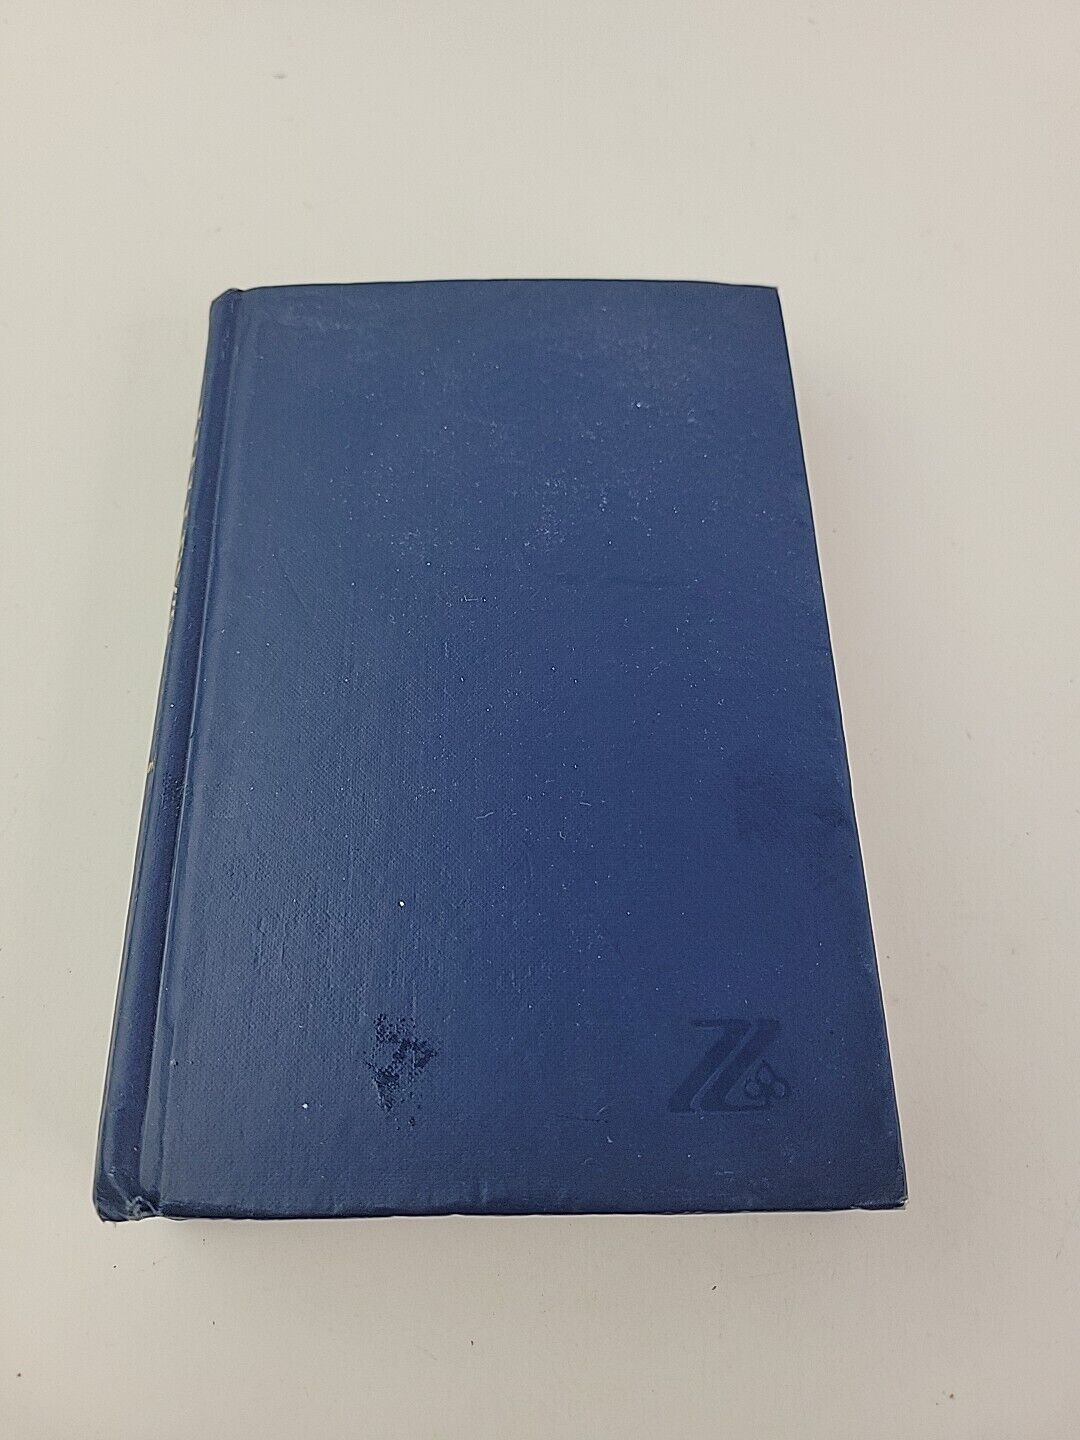 Vintage Halley\'s Bible Handbook Zondervan 24th Edition 1965